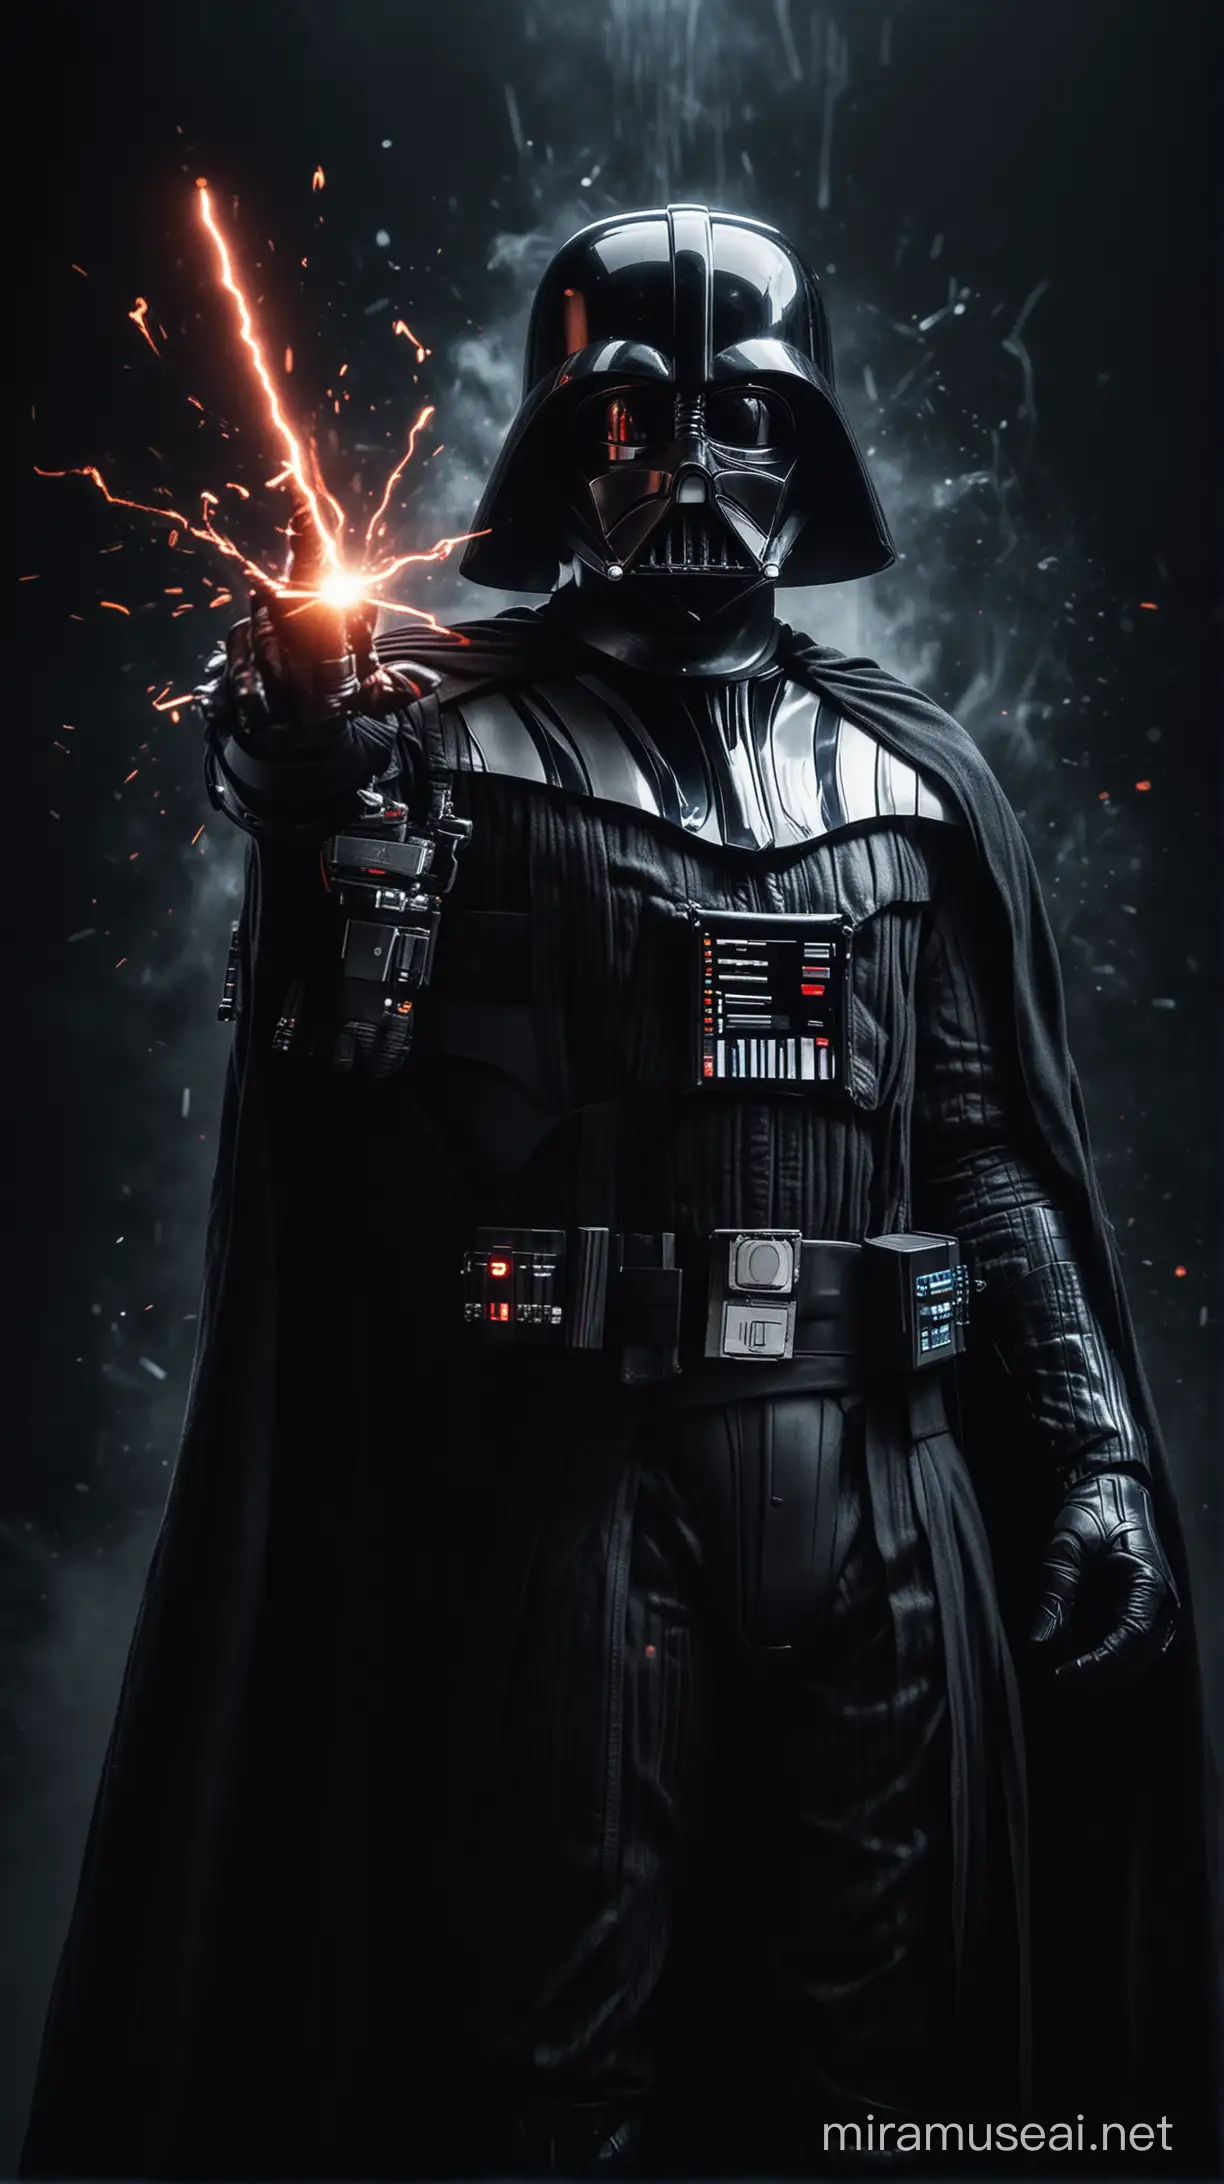 Darth Vader Unleashing the Force in a Dark Galaxy